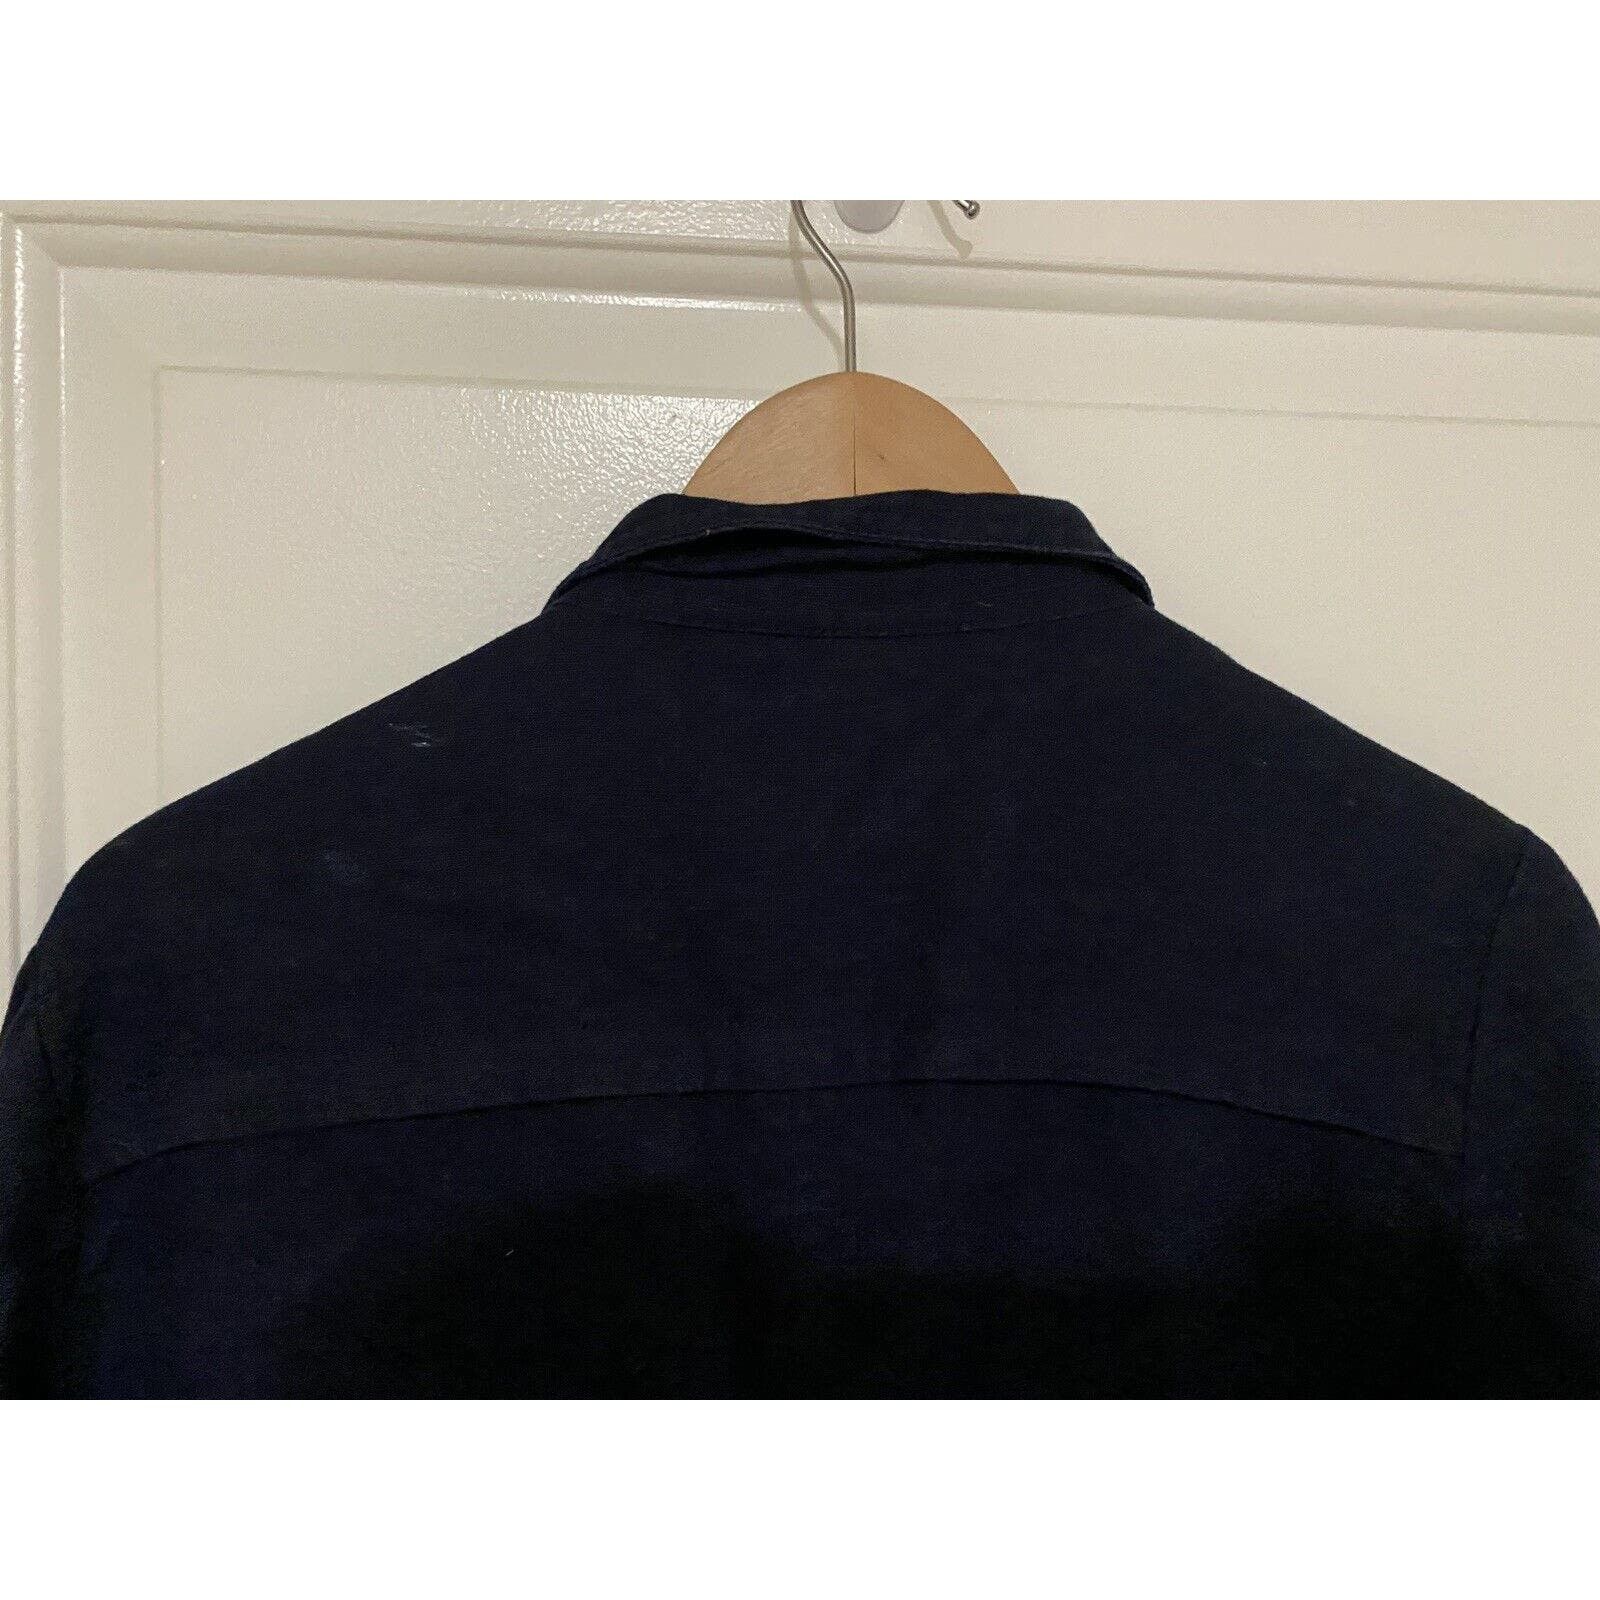 Inc INC Concepts Jacket Women Sz Med Button Up Coat Blue Linen Size M / US 6-8 / IT 42-44 - 7 Thumbnail